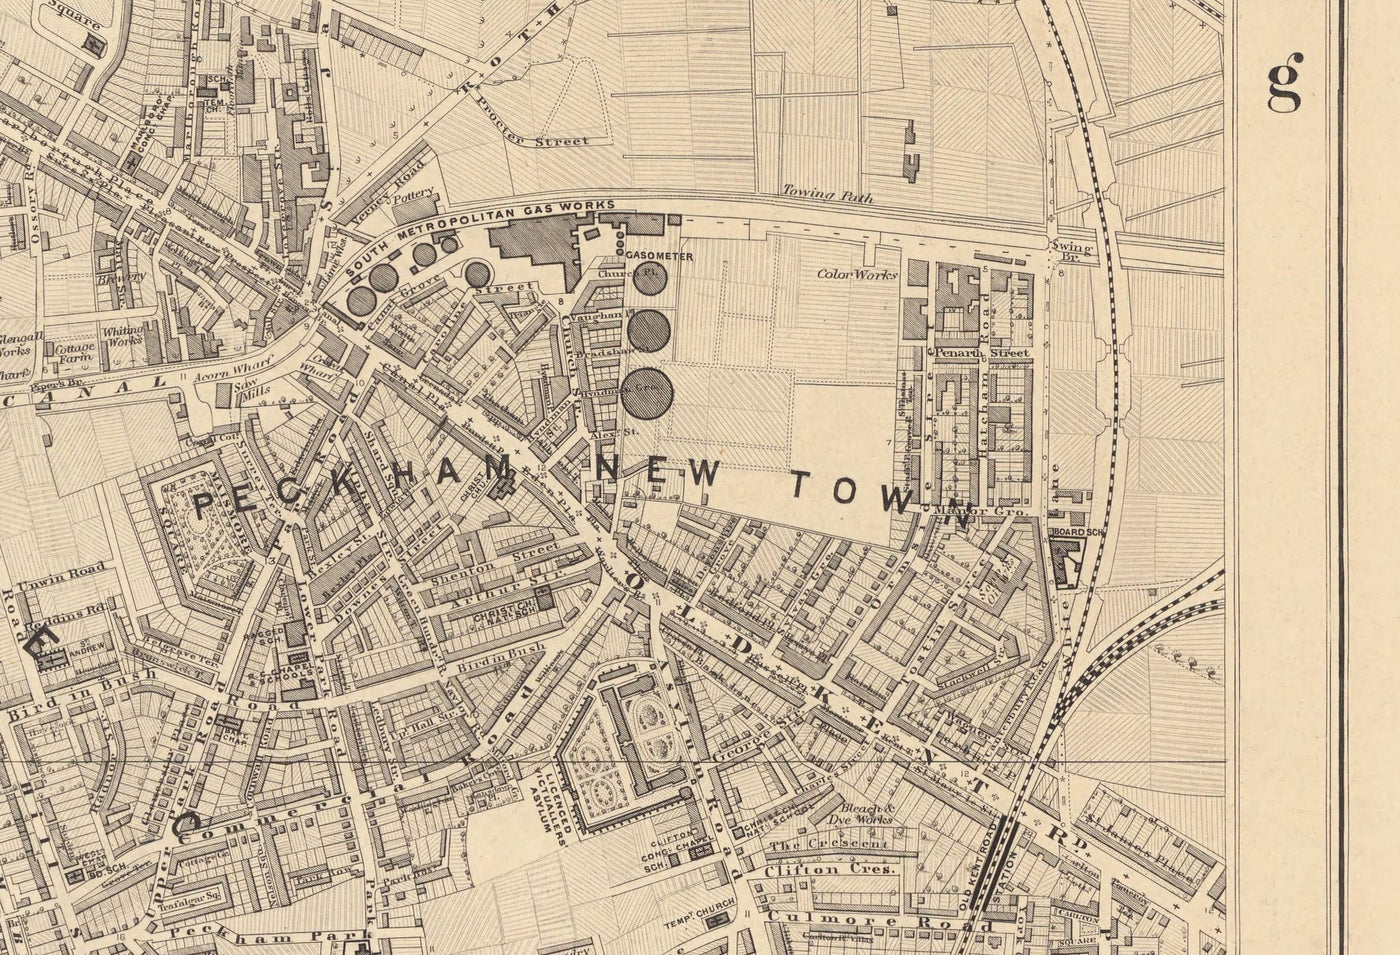 Alte Karte von South London von Edward Stanford, 1862 - Camberwell, Peckham, Walworth, Nunhead, Alt Kent Road - SE5, SE17, SE15, SE1, SE16